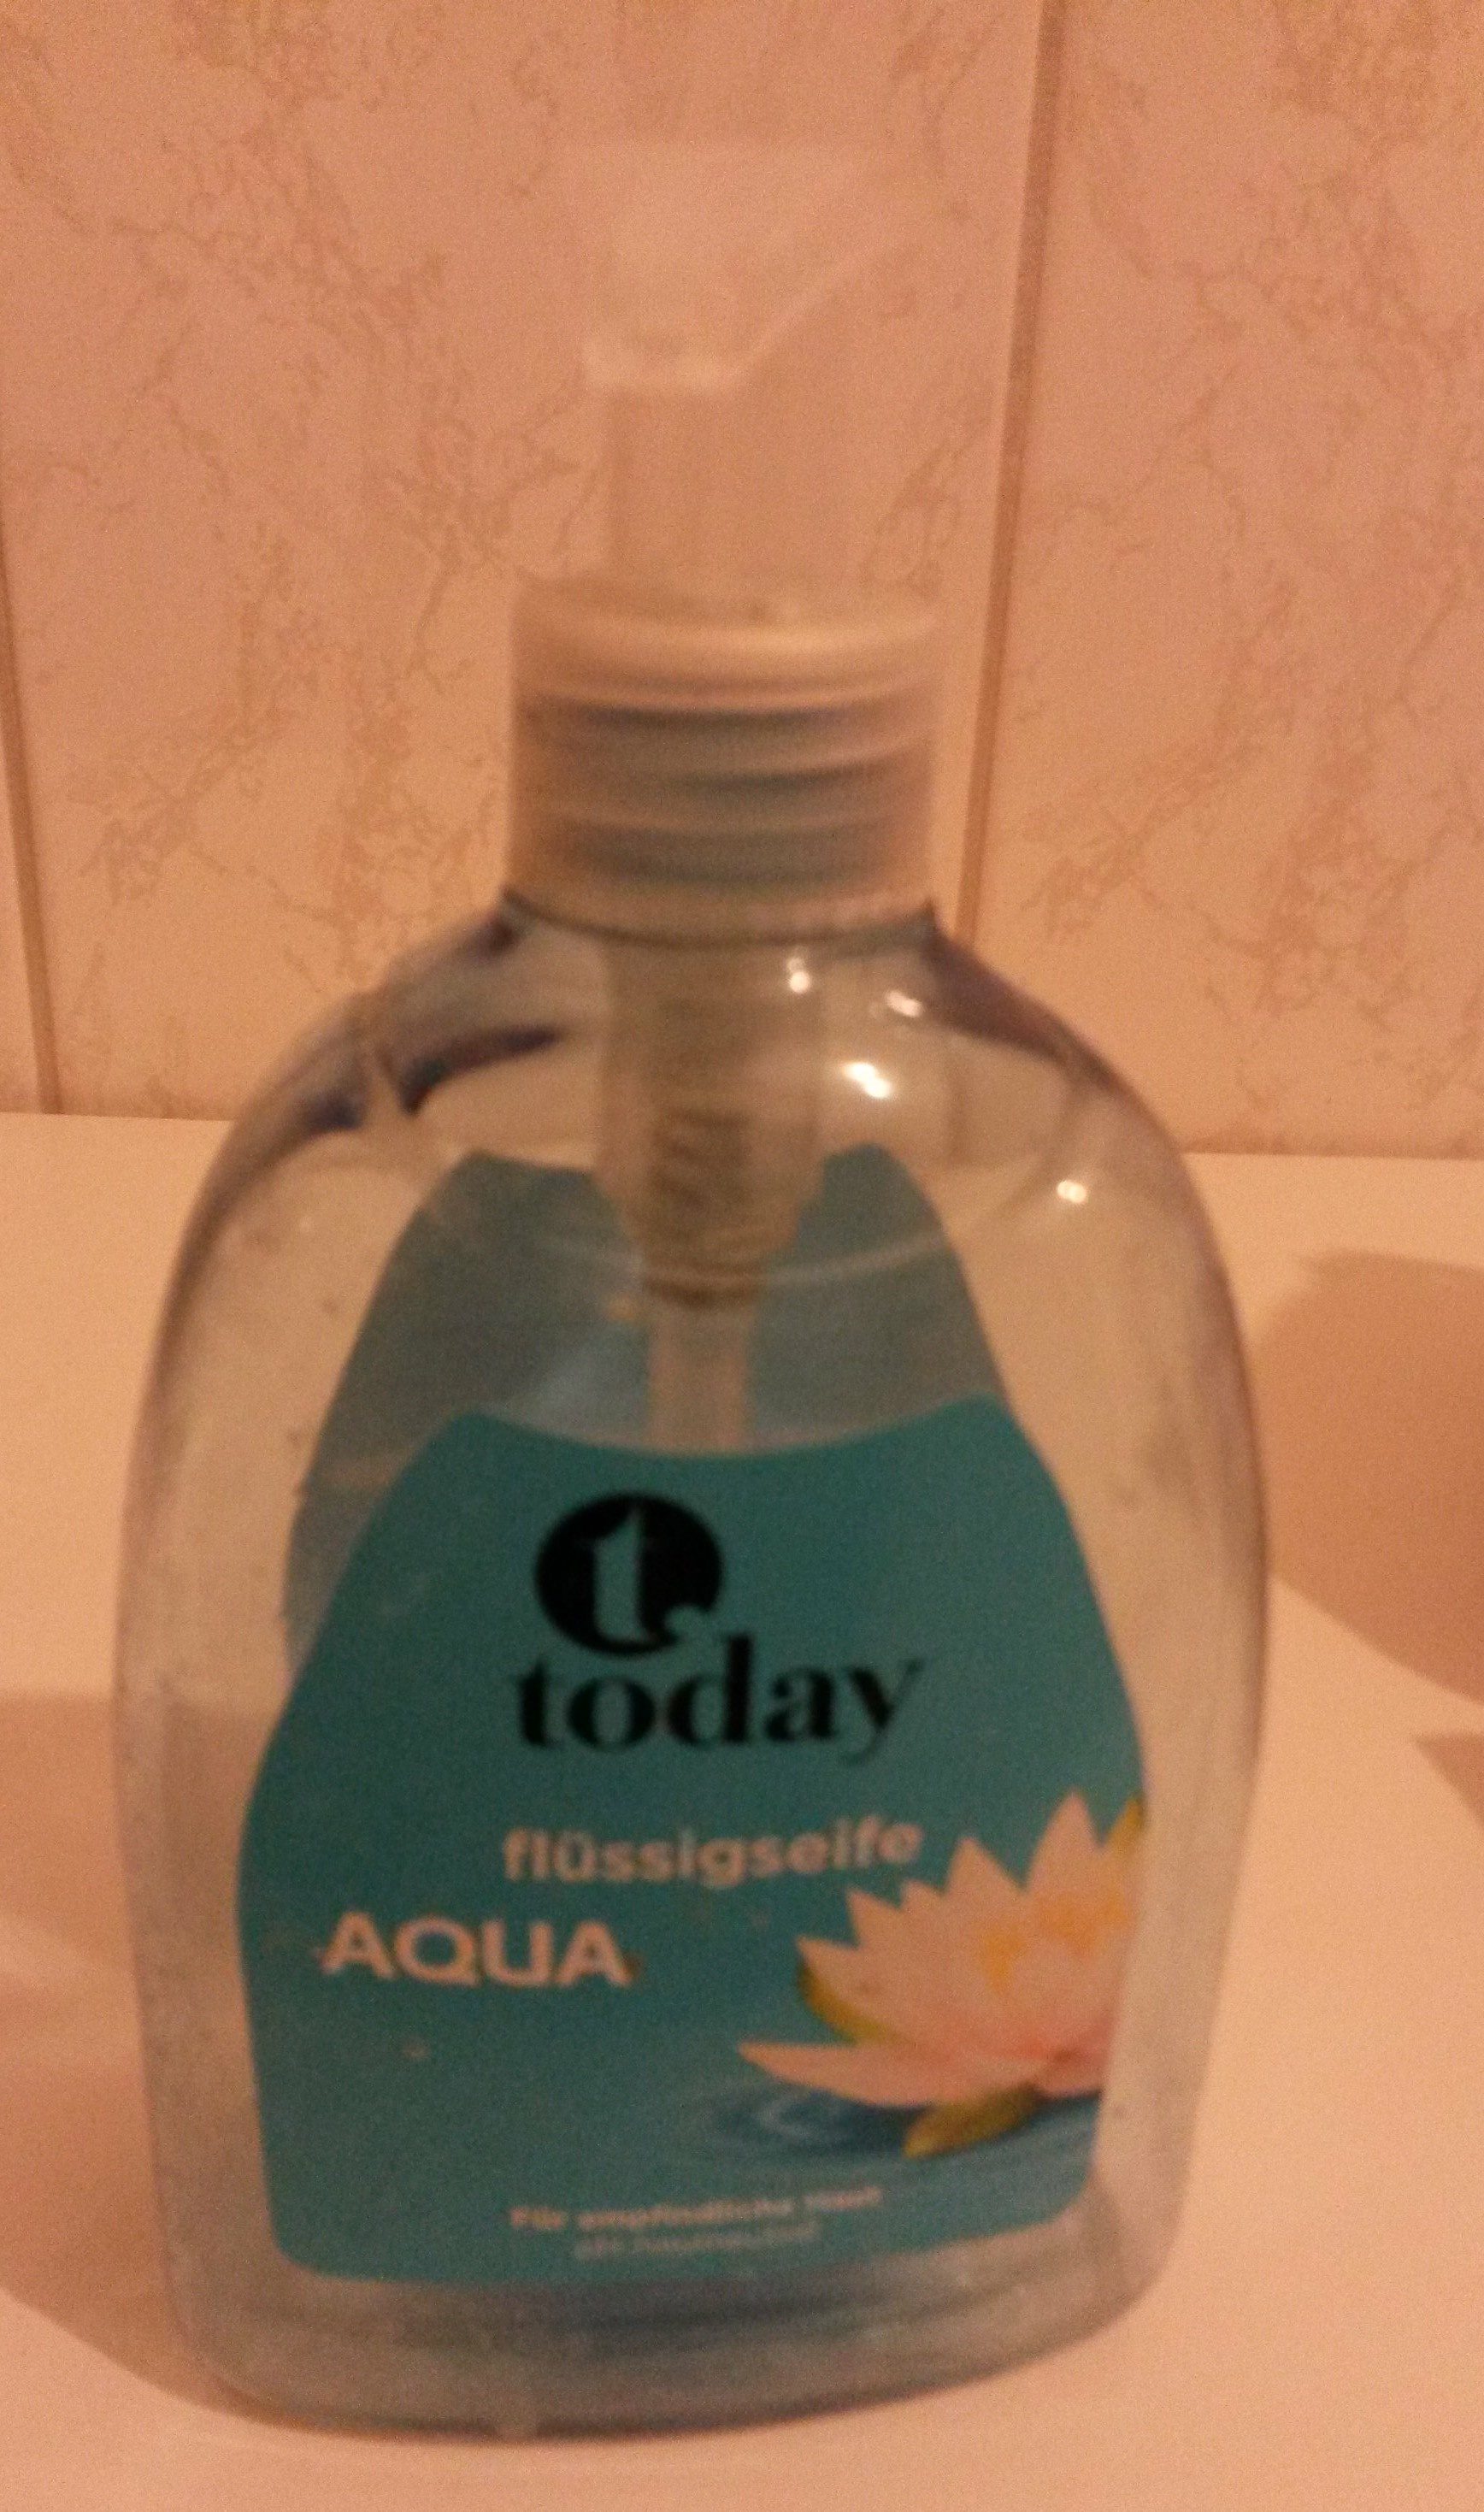 today Flüssigseife aqua - Продукт - de